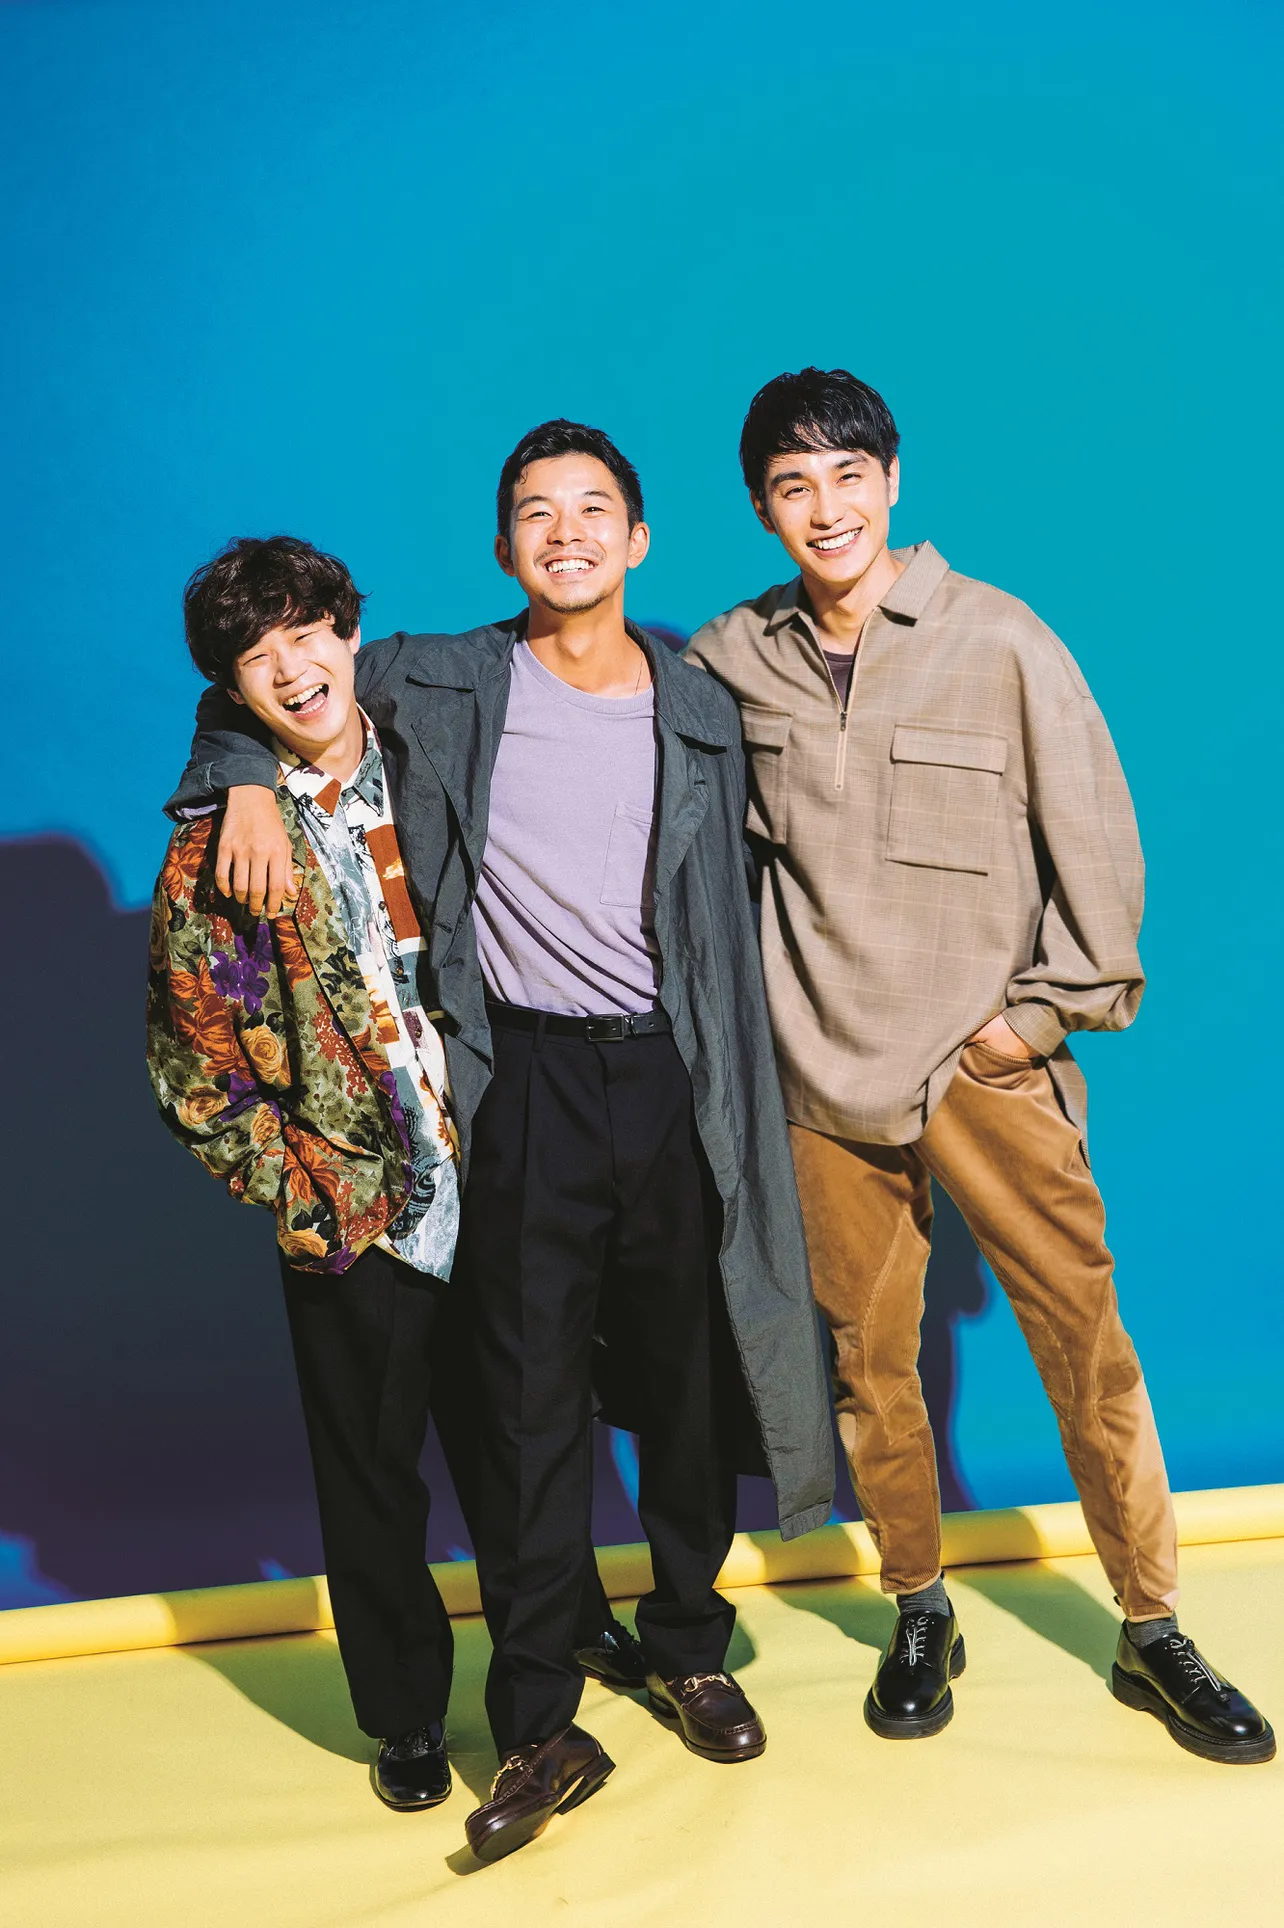 10月28日(土)公開の映画「ポンチョに夜明けの風はらませて」で共演する太賀、中村蒼、矢本悠馬